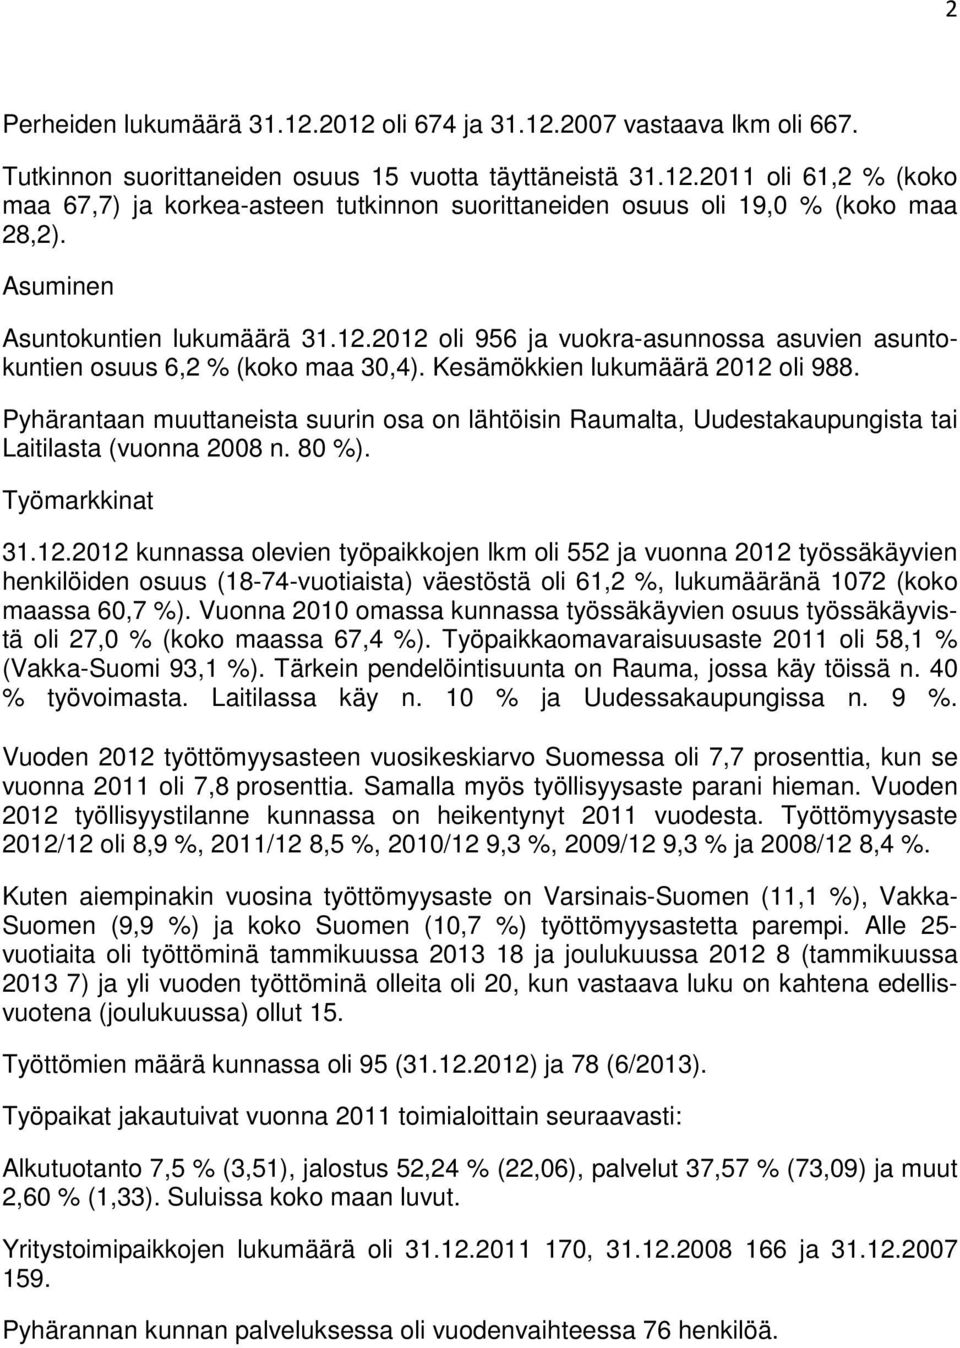 Pyhärantaan muuttaneista suurin osa on lähtöisin Raumalta, Uudestakaupungista tai Laitilasta (vuonna 2008 n. 80 %). Työmarkkinat 31.12.